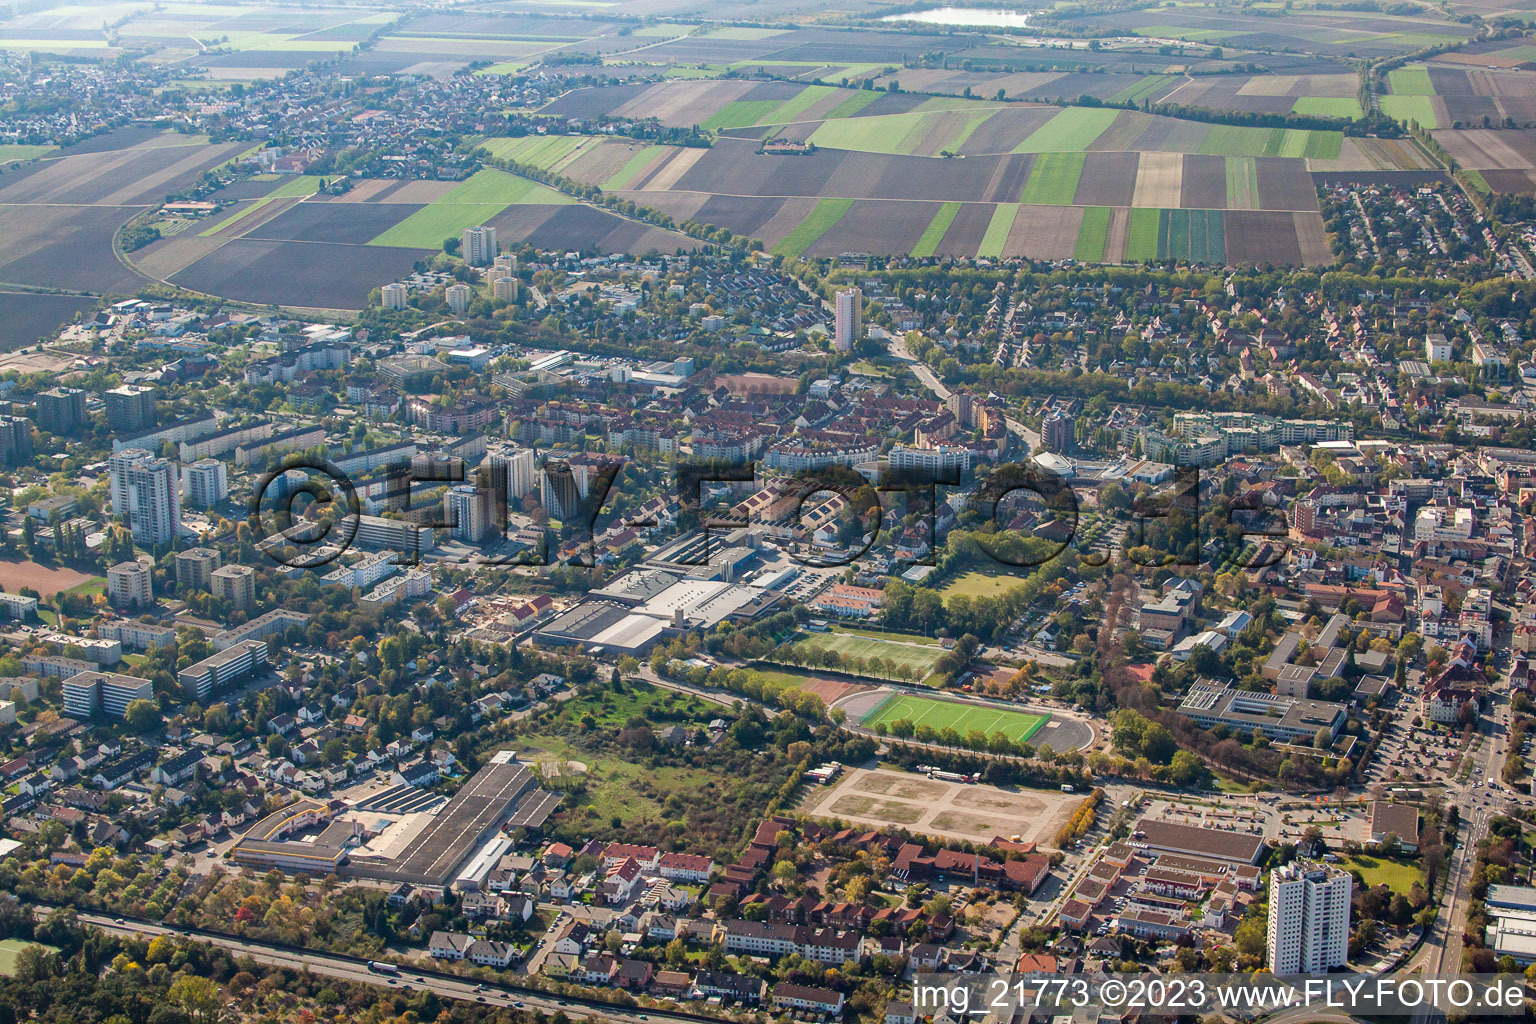 Frankenthal dans le département Rhénanie-Palatinat, Allemagne vue du ciel